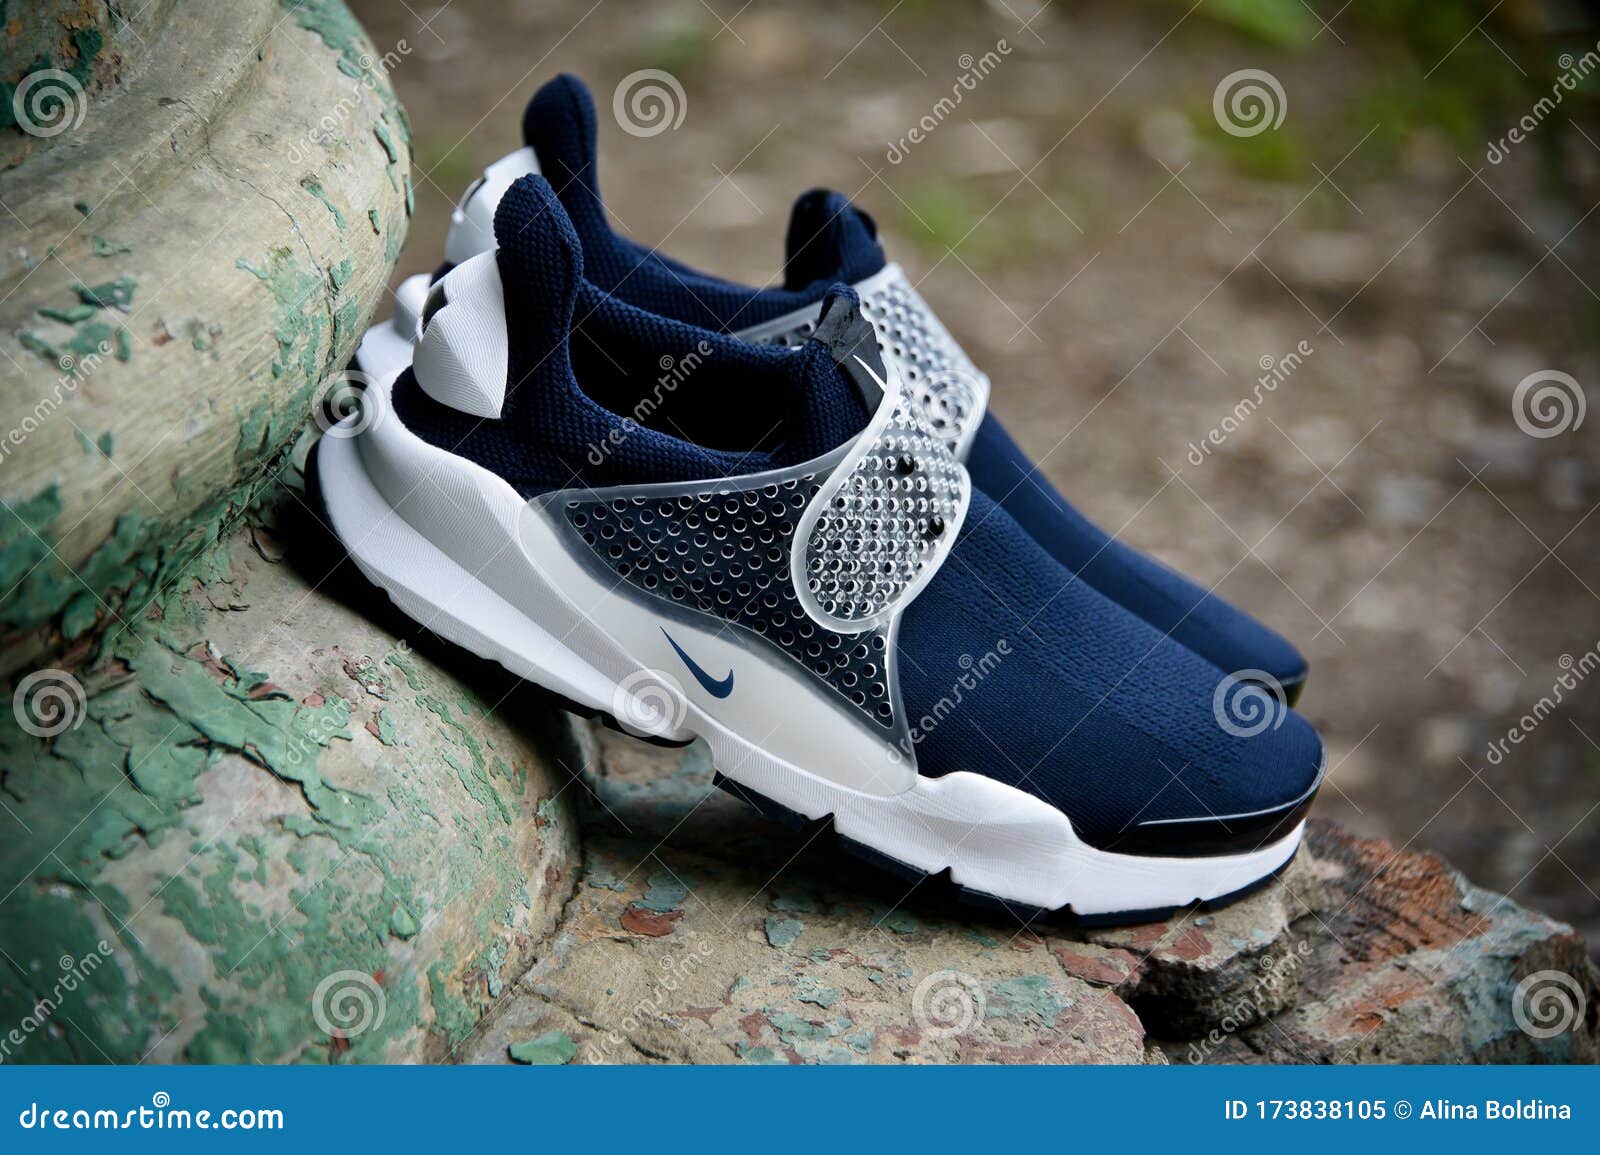 Nike Dart 9 Black Gray White￼ Running Shoes 445140-002 Men Size 7.5 | eBay